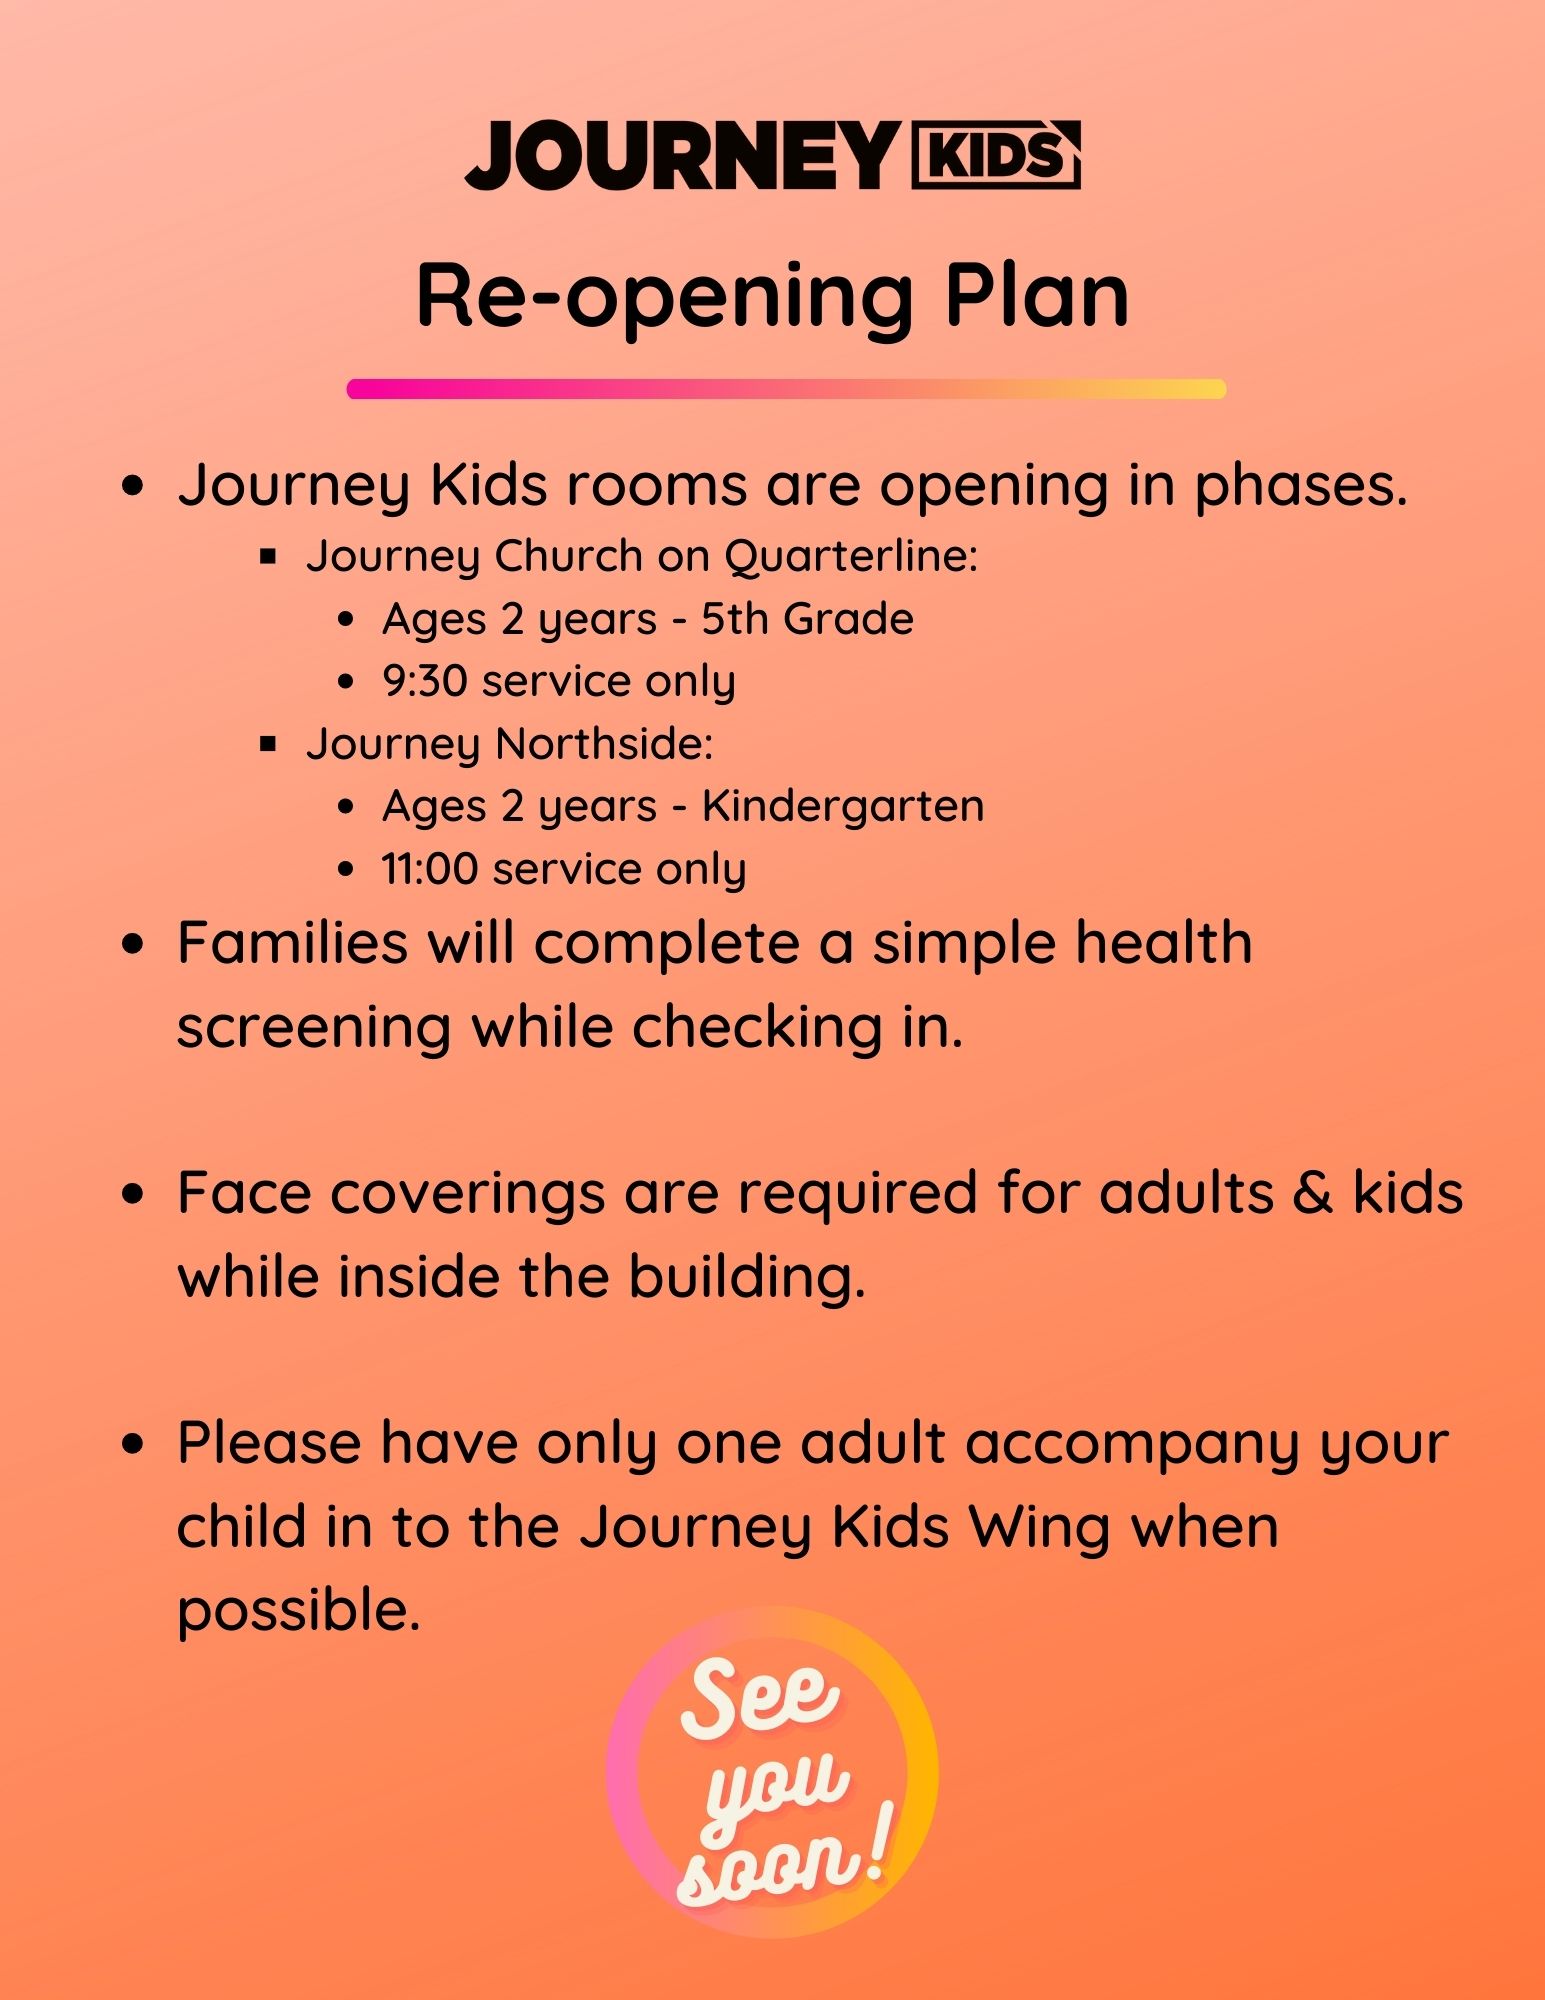 Journey Kids Reopening Plan, Phase 2